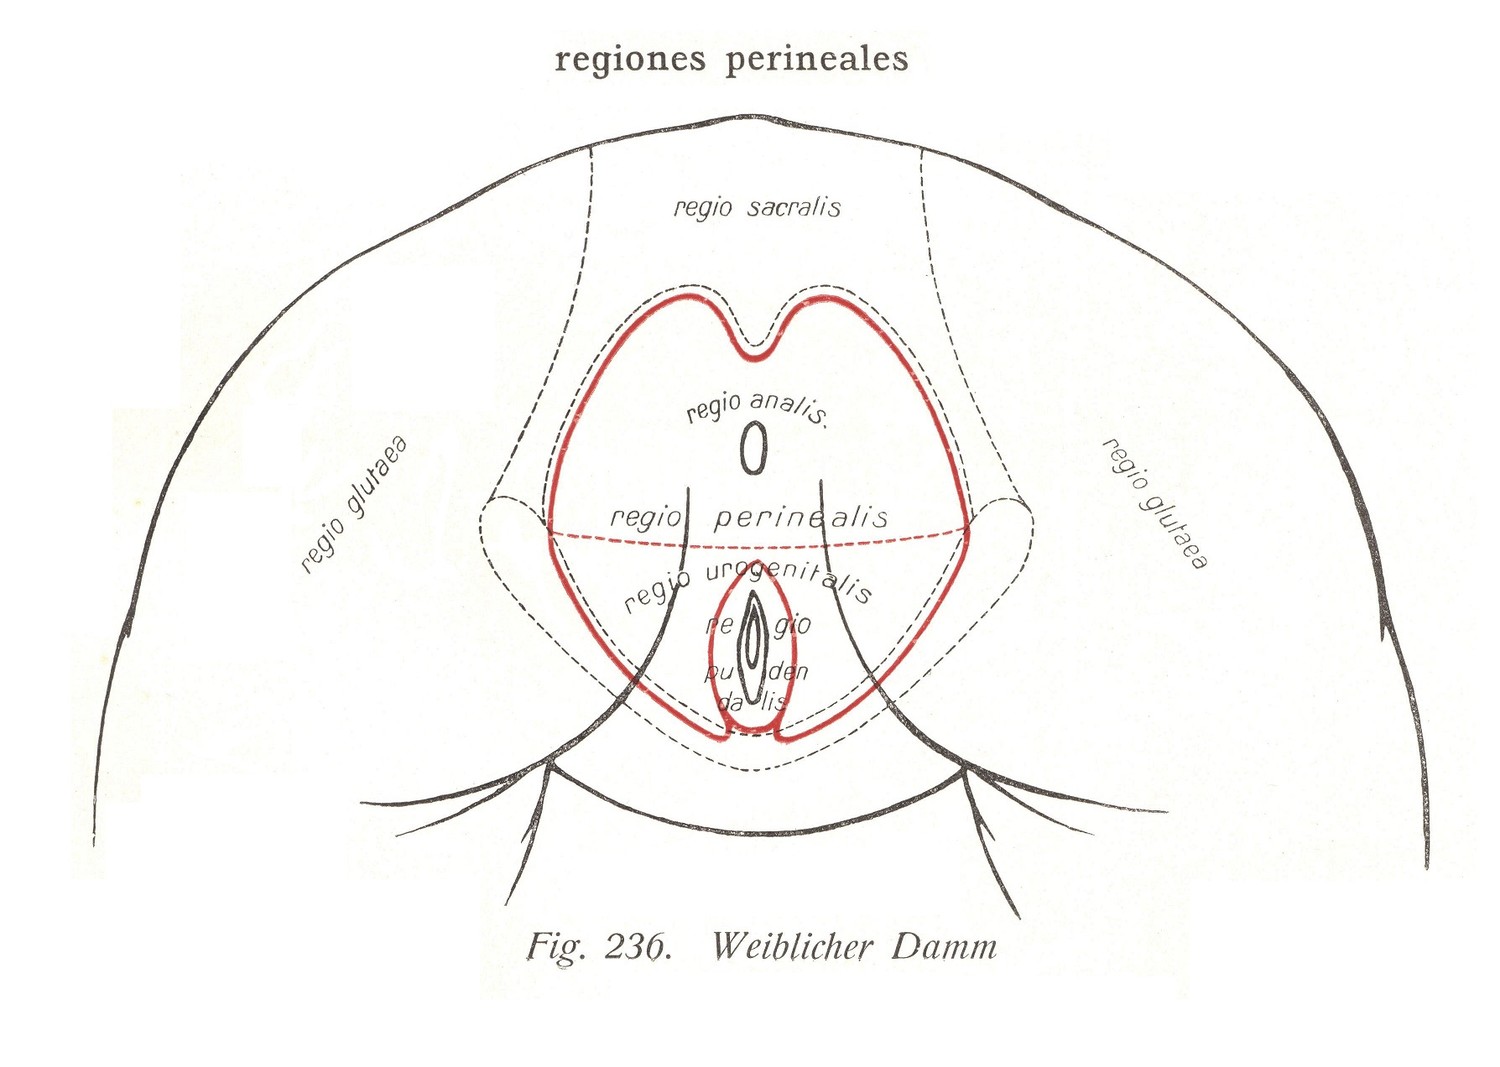 Regiones perineales - Weiblicher Damm